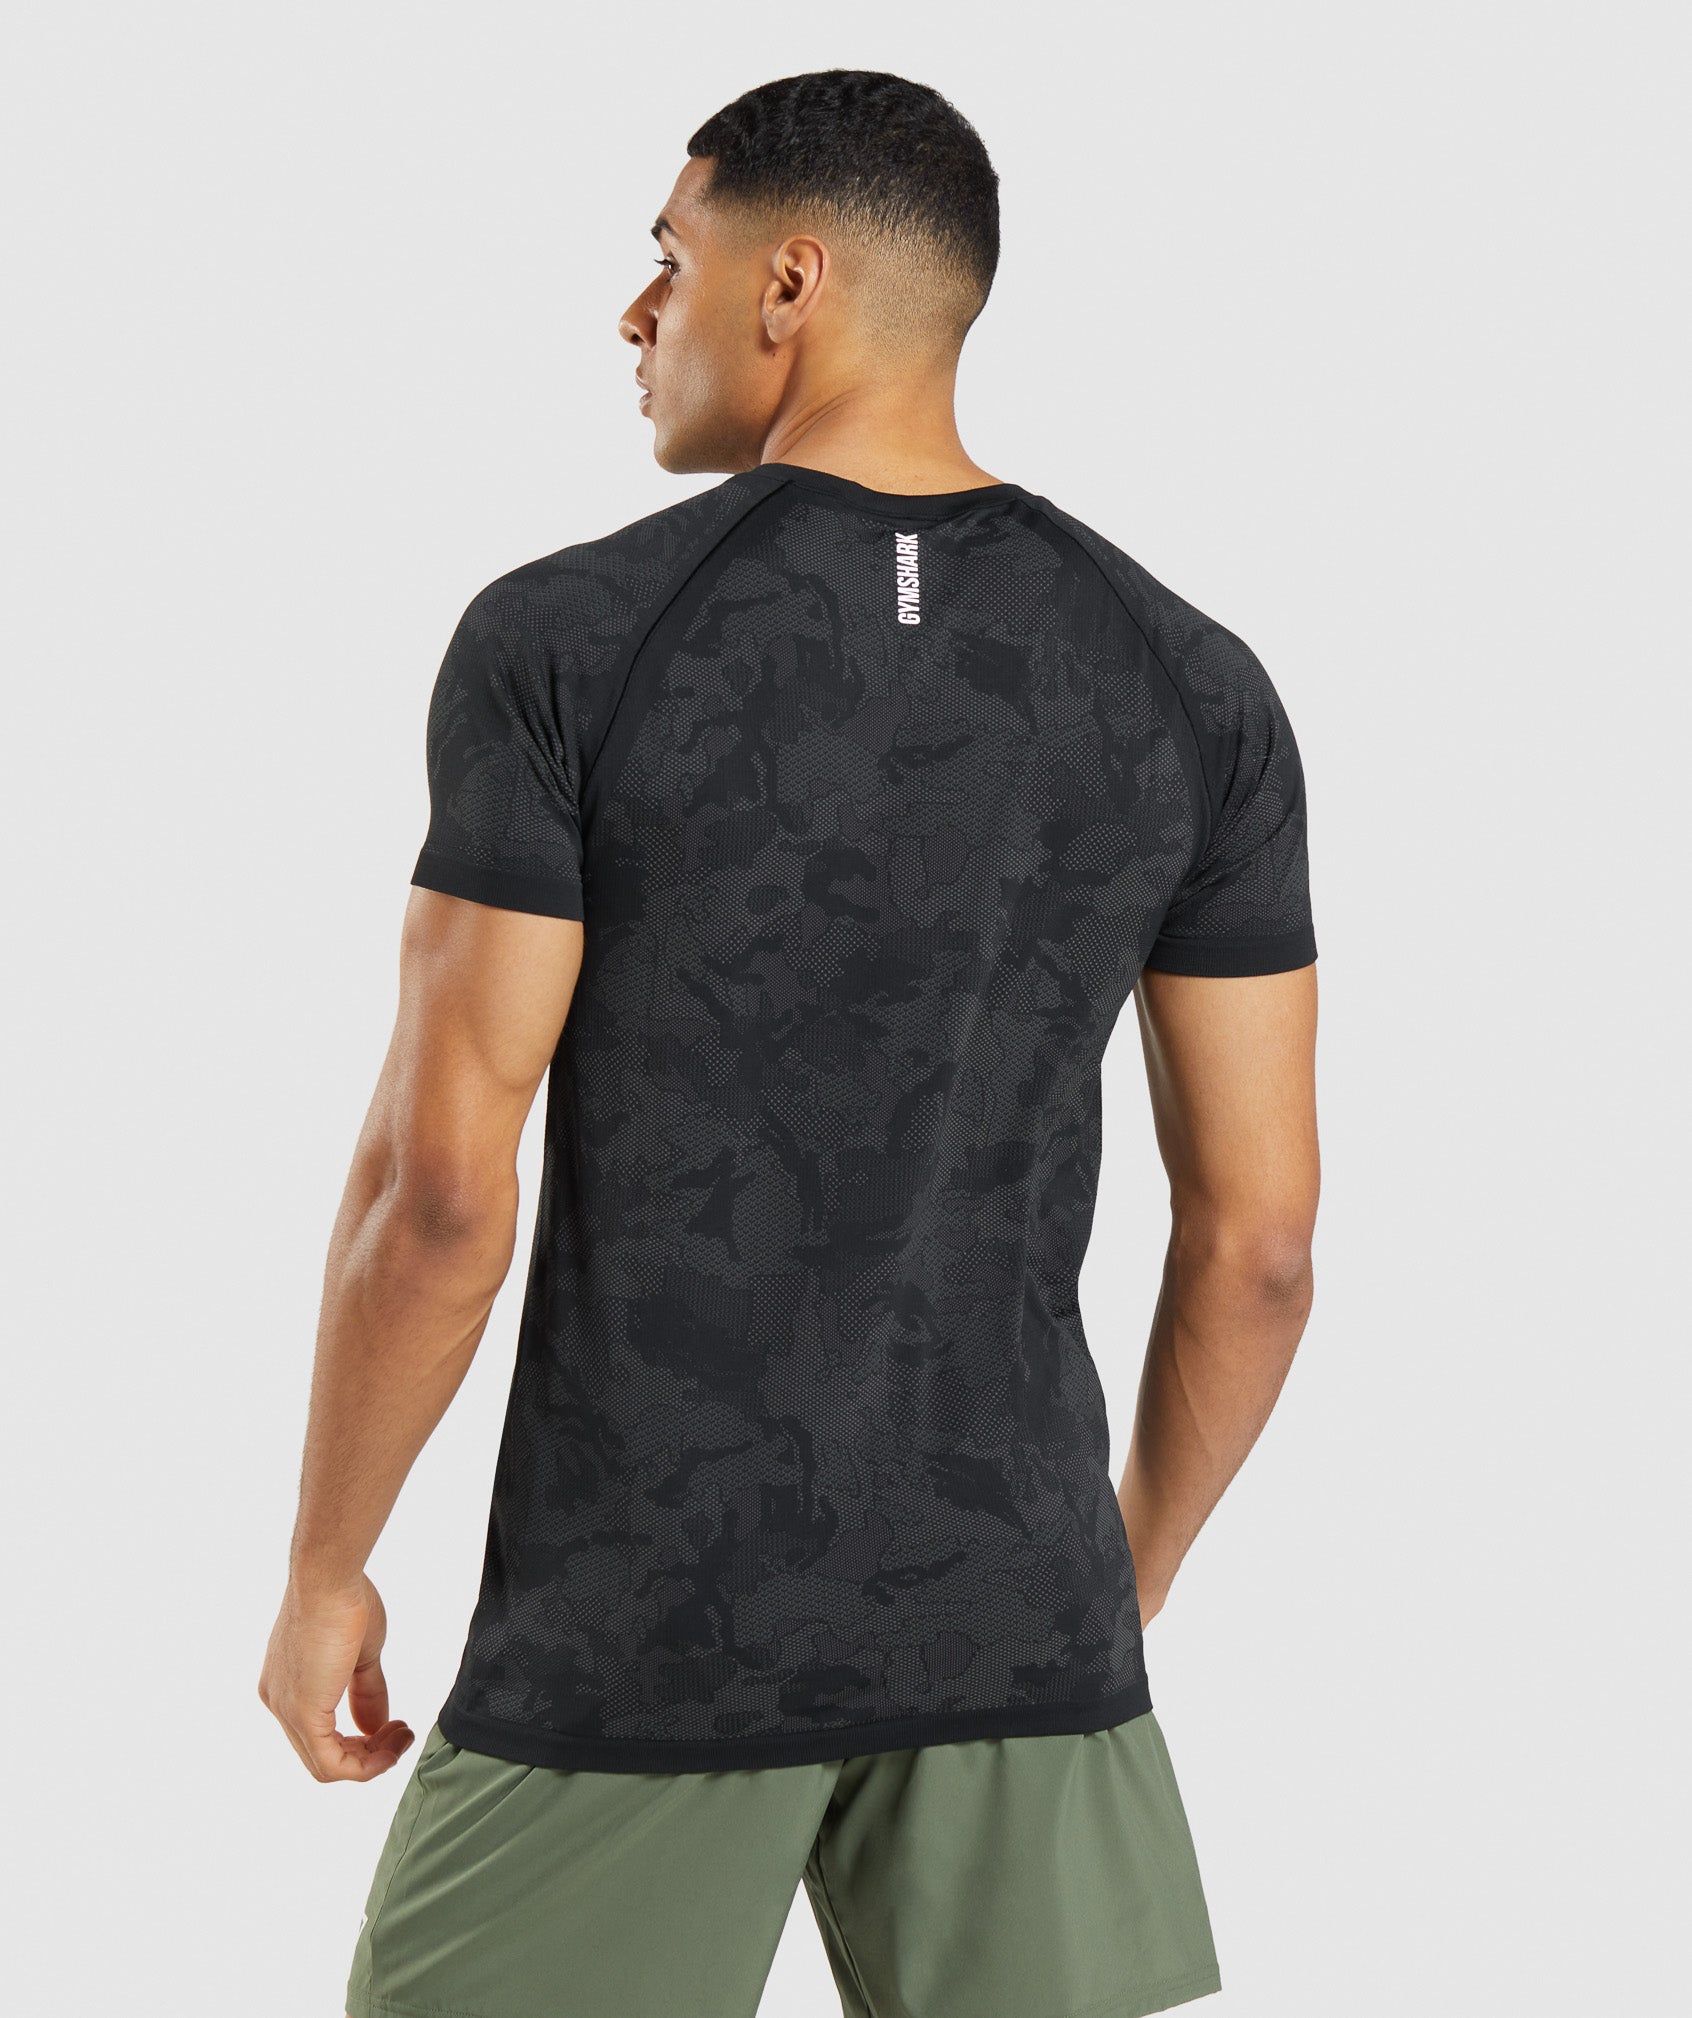 Men's Short Sleeve Workout Shirts & Tops - Gymshark